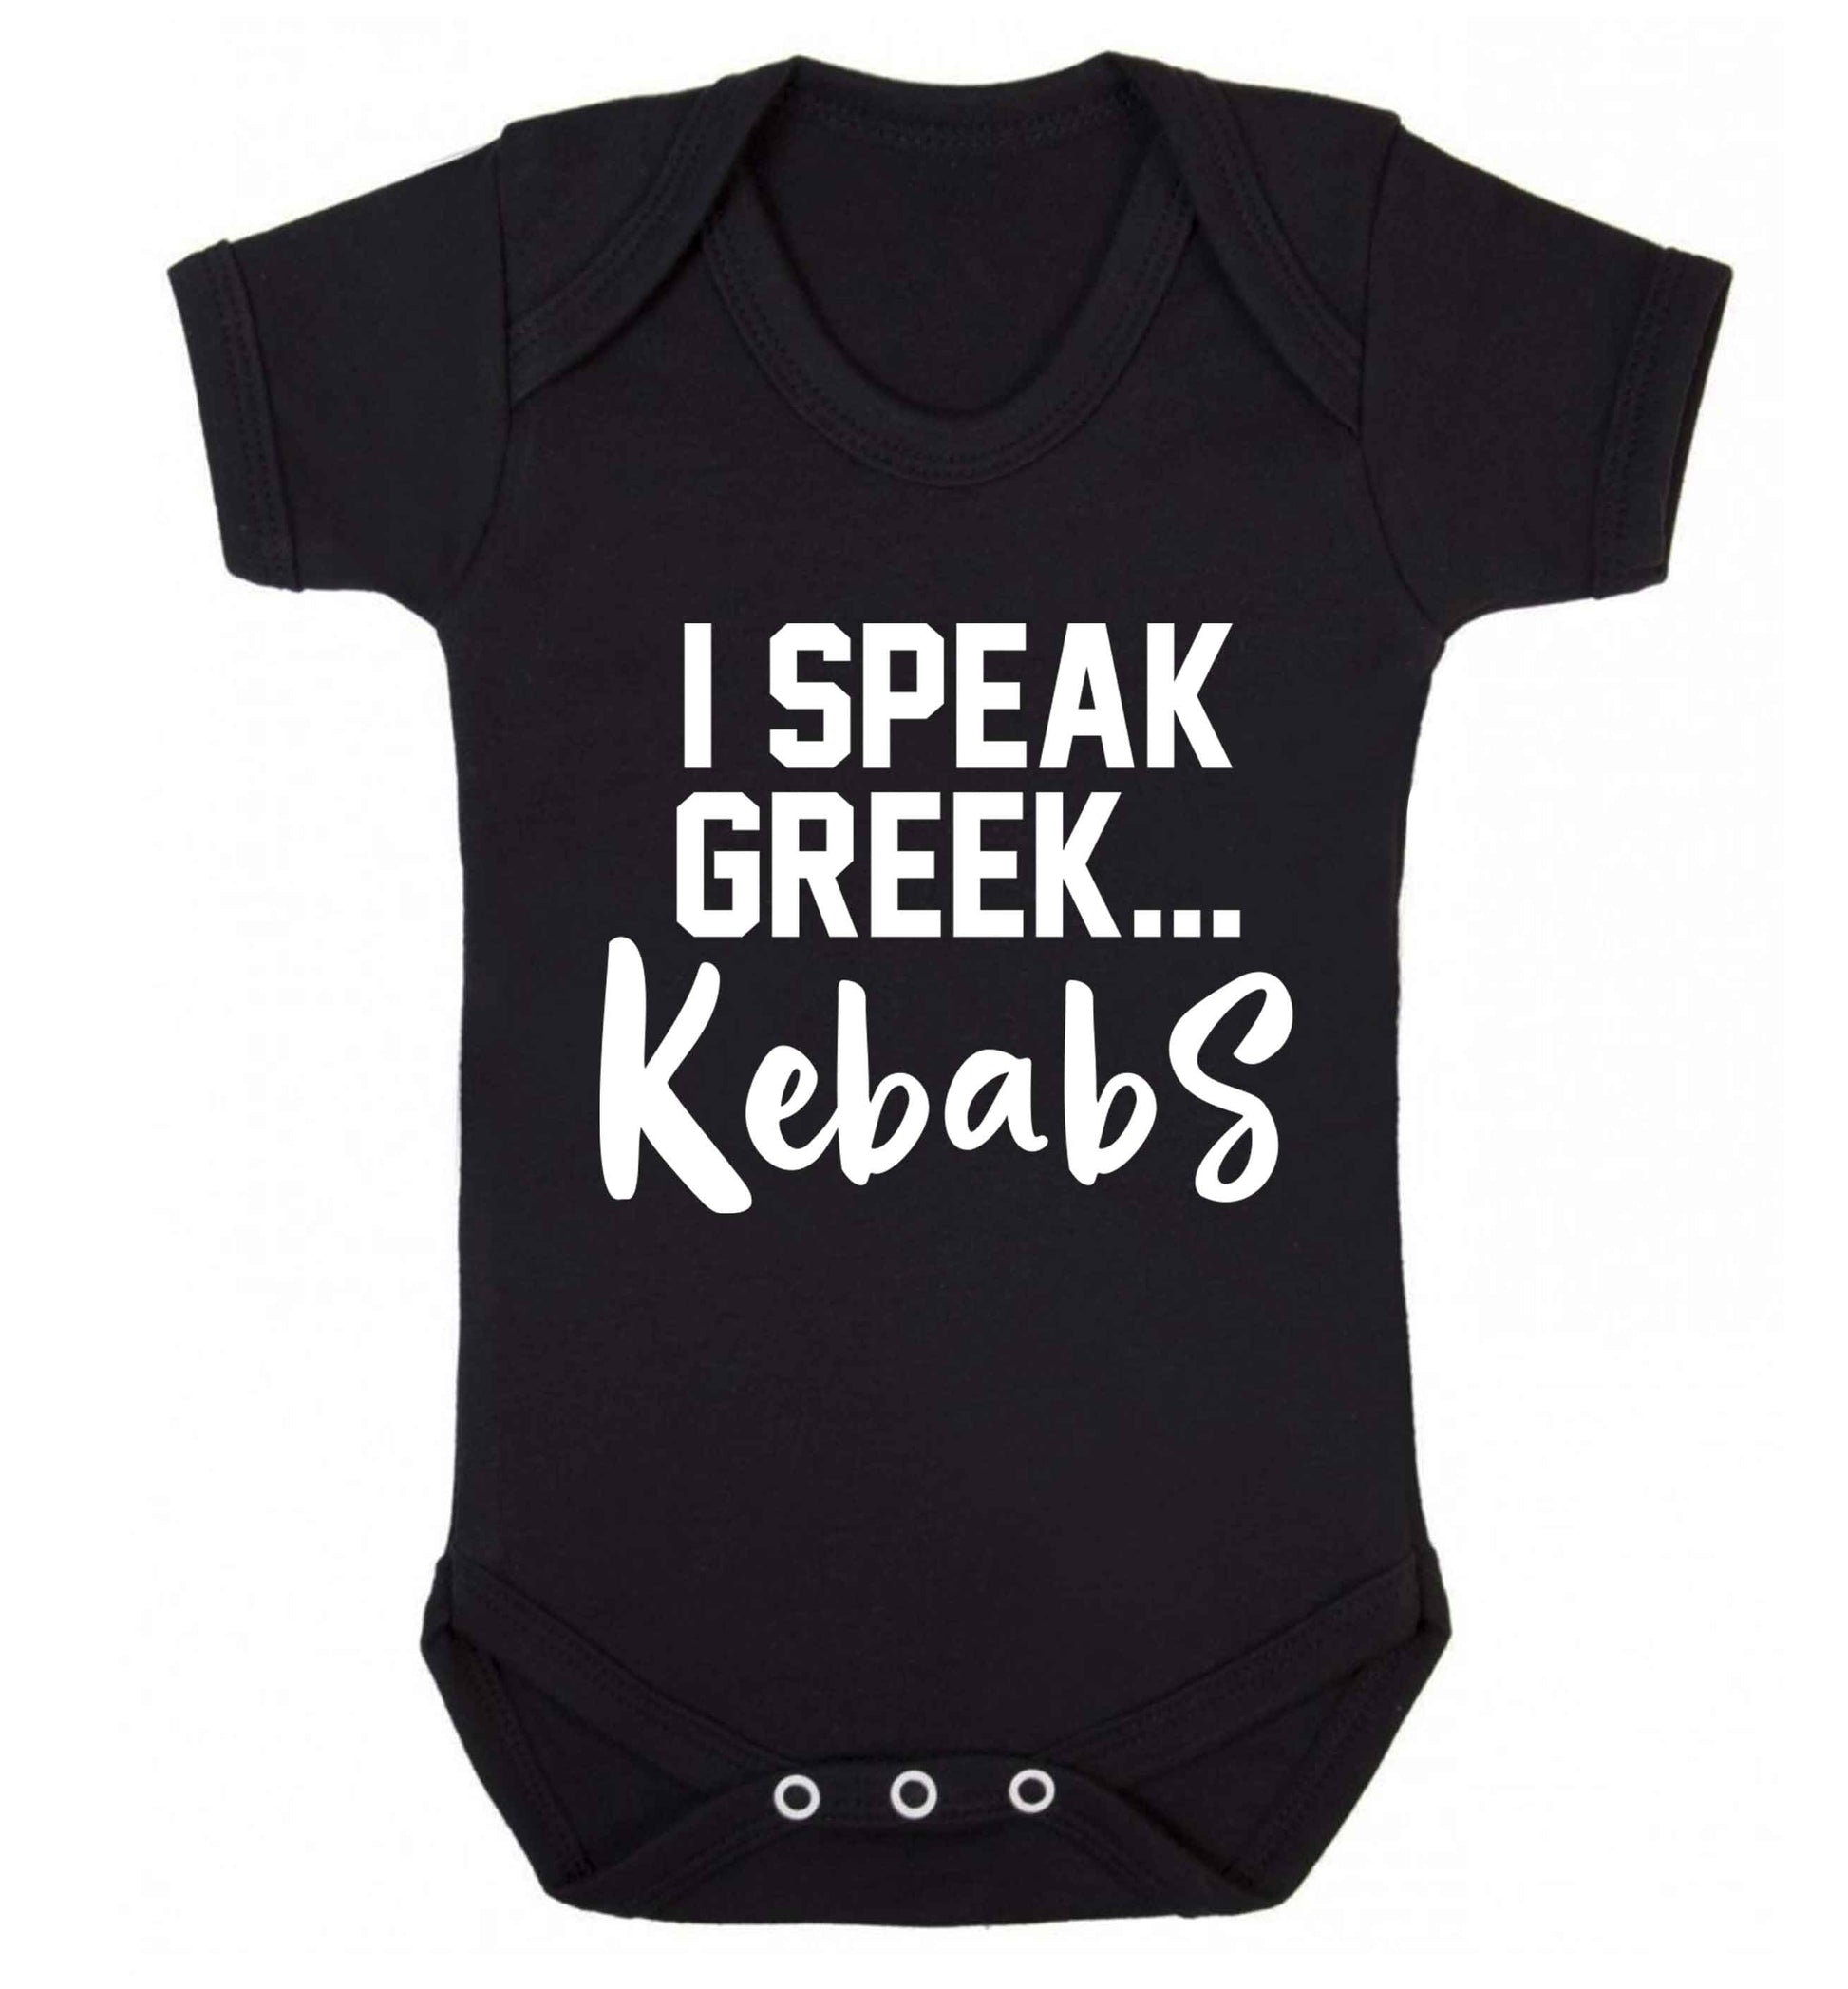 I speak Greek...kebabs Baby Vest black 18-24 months